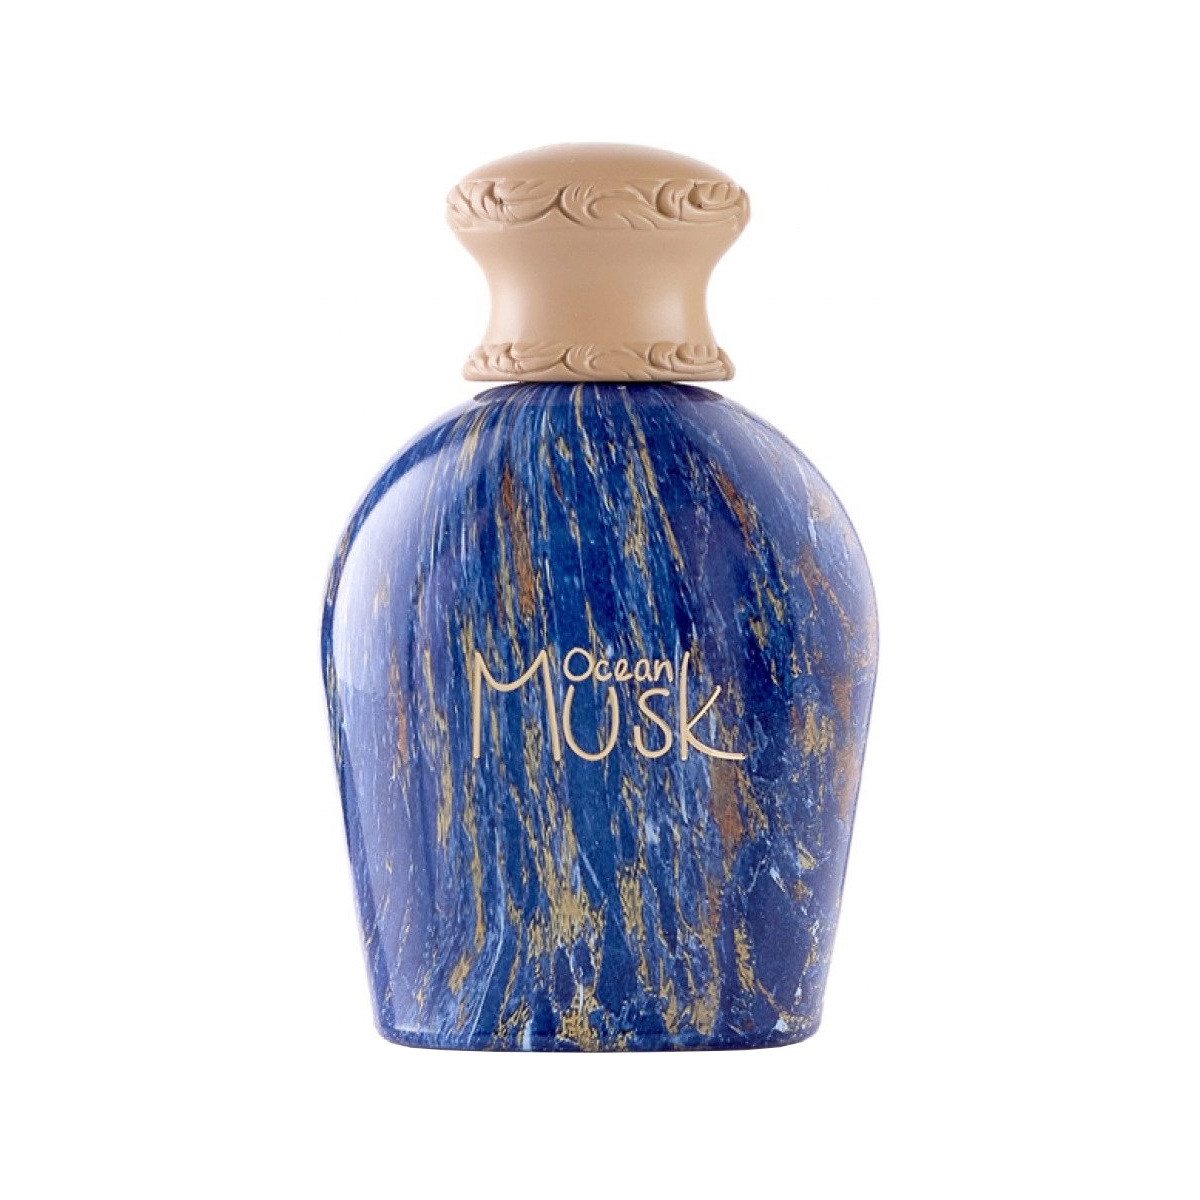 Ocean Musk Junaid Perfumes Perfumes, Profumi Unisex, Arada Perfumes